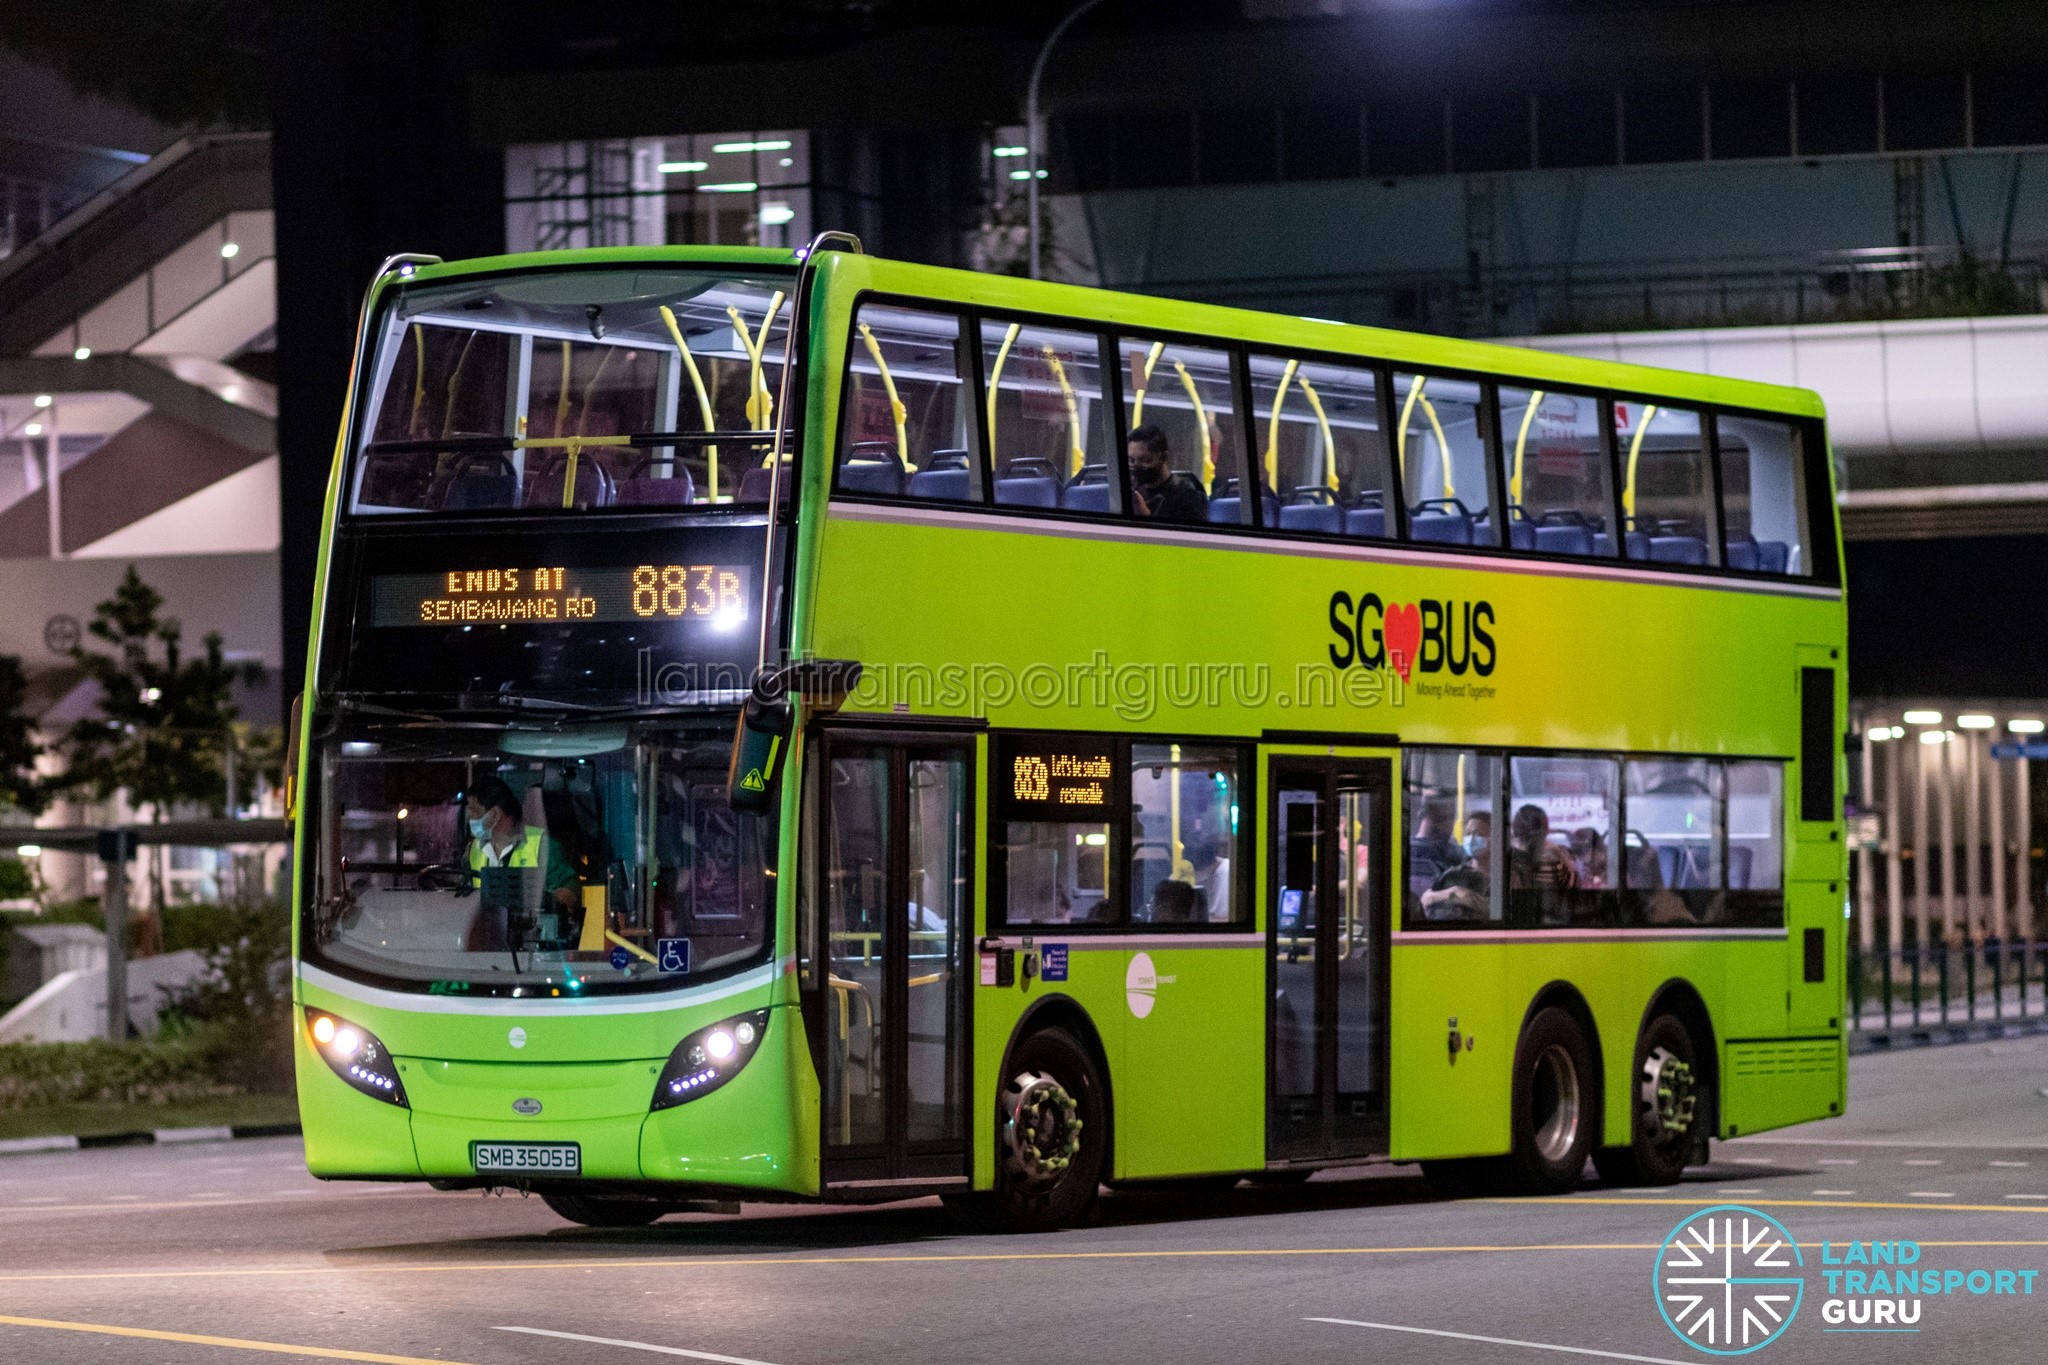 Tower Transit Bus Service 883B